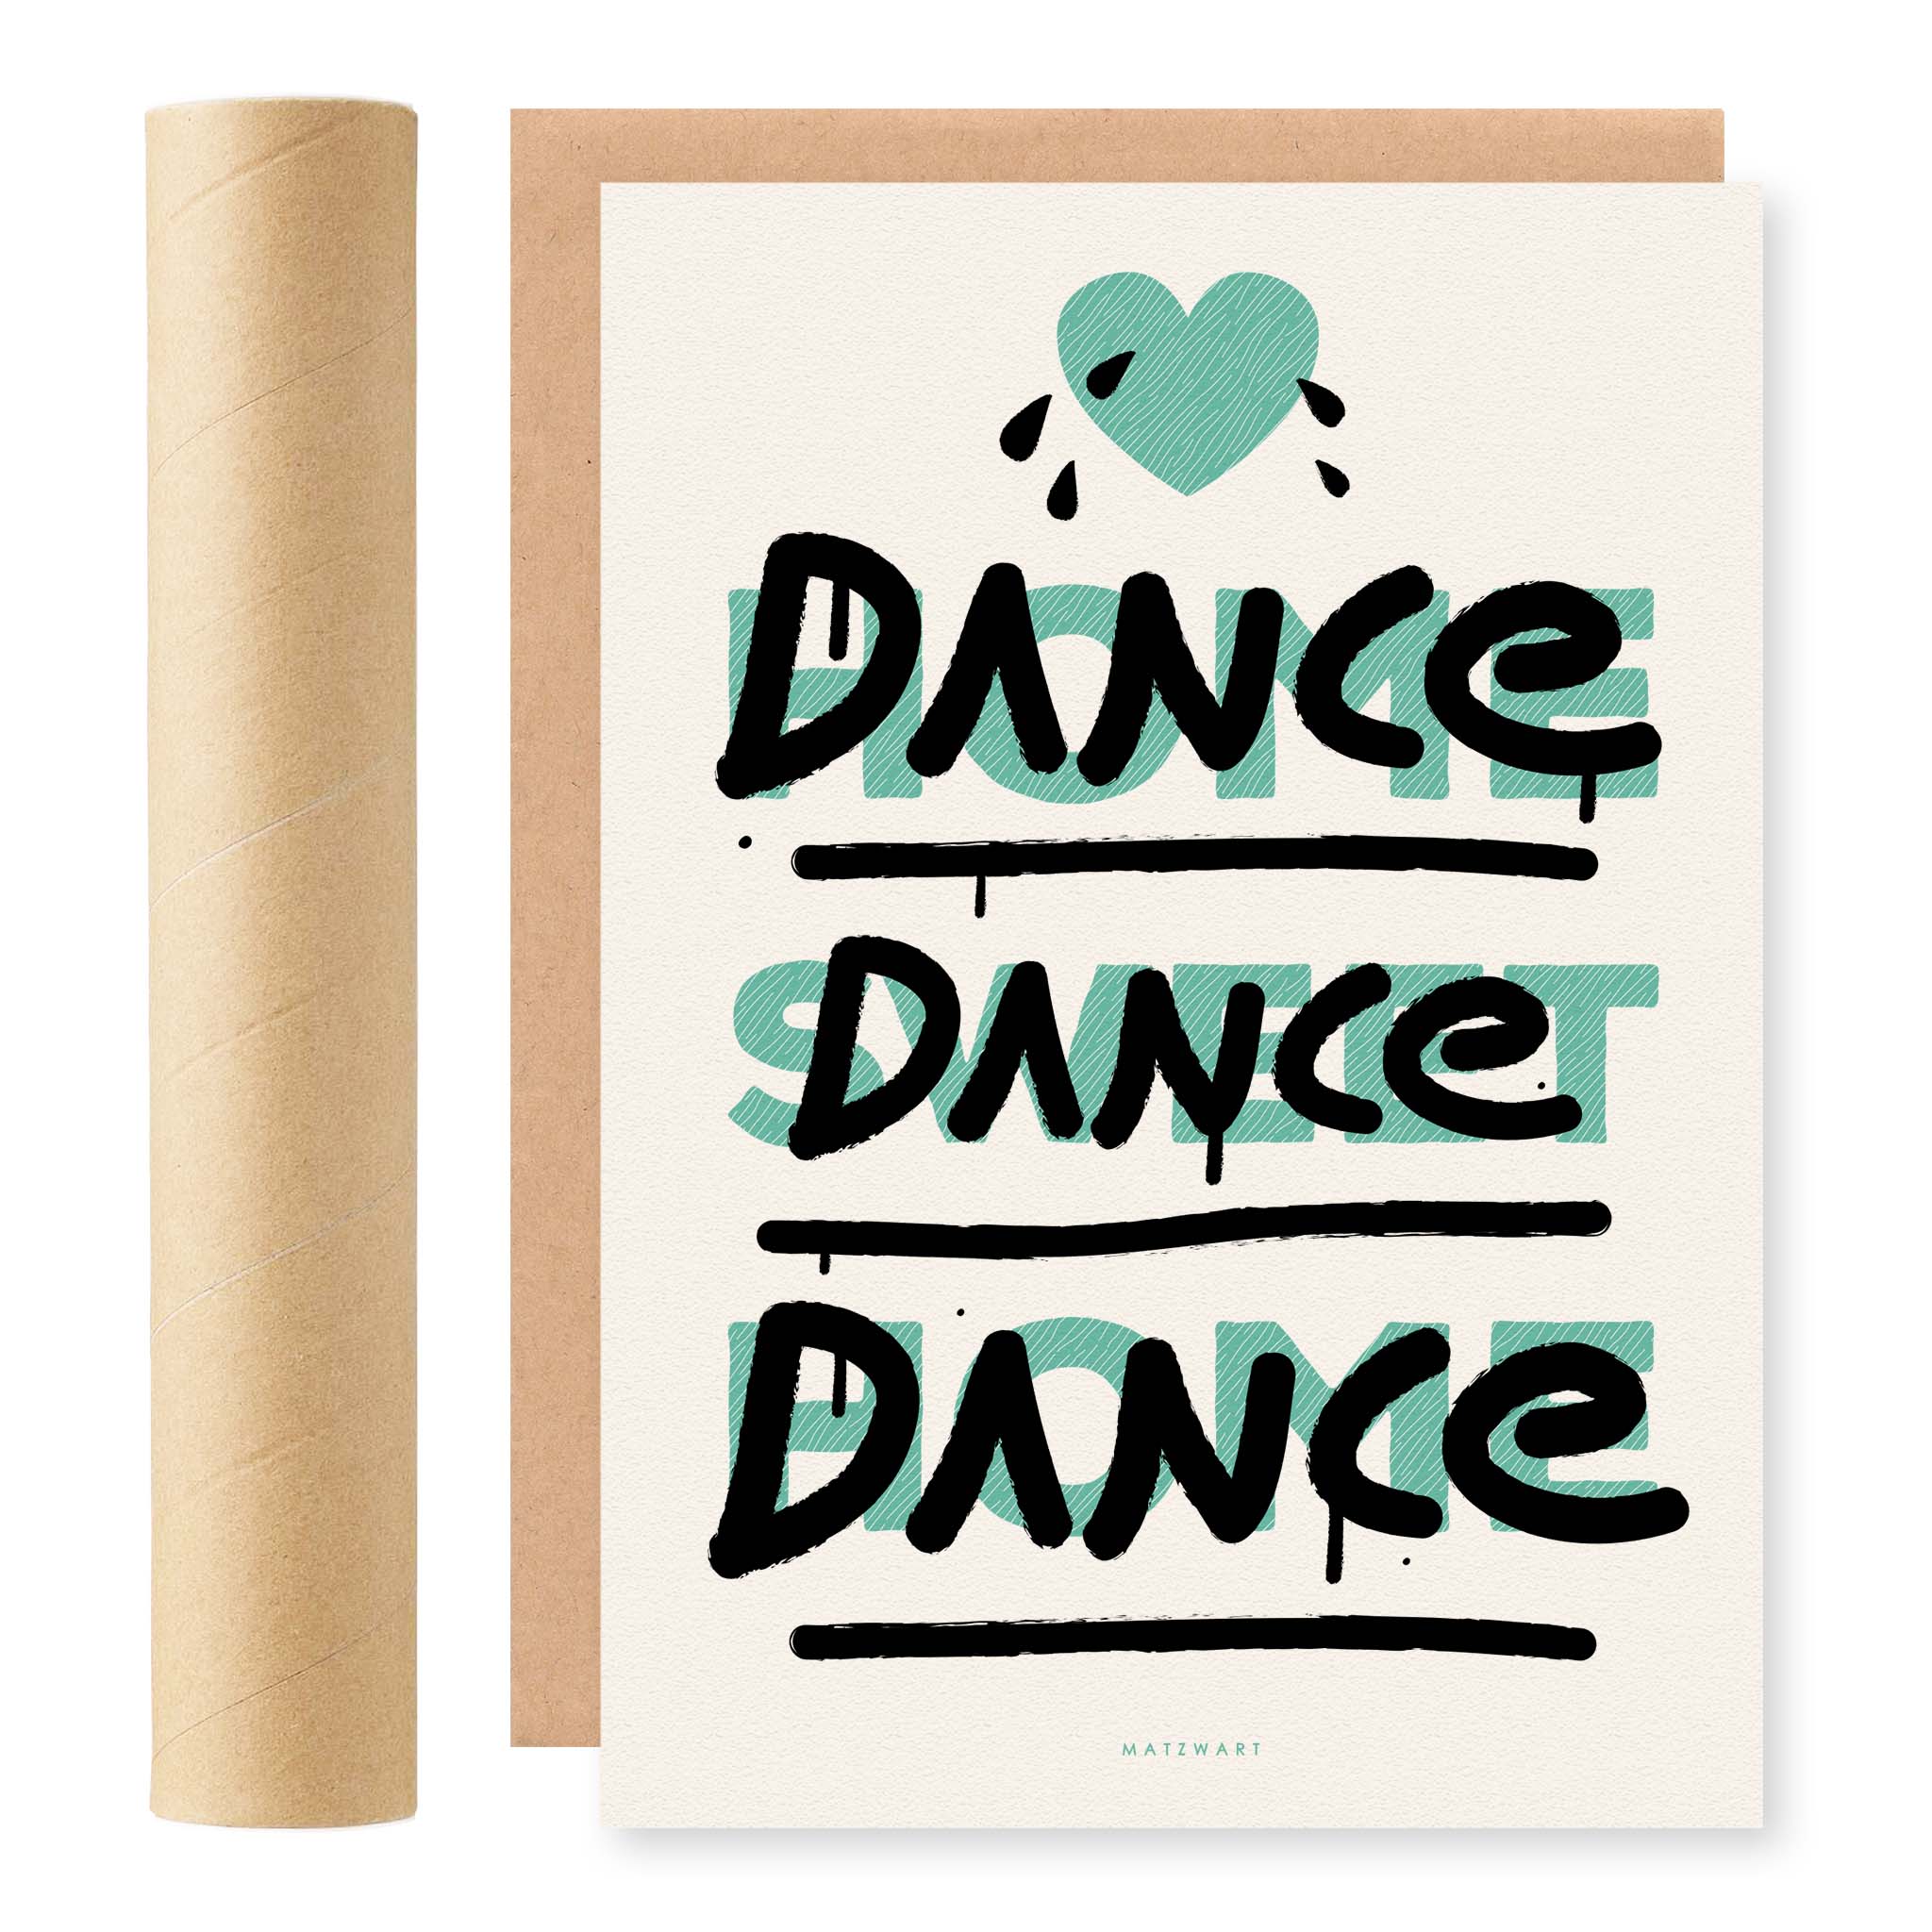 Dance Dance Dance RISO Print